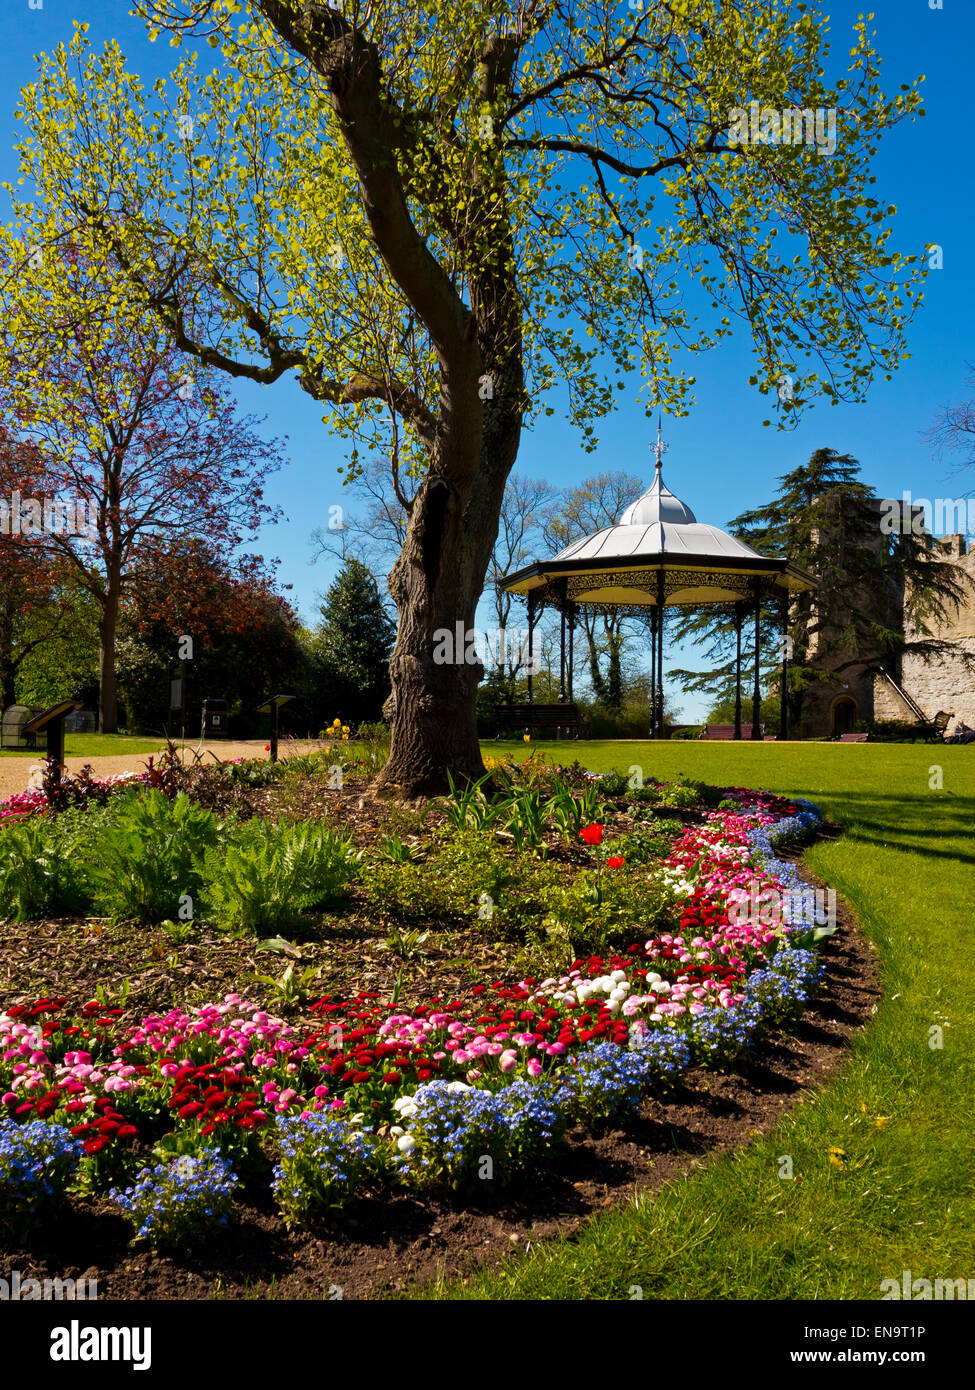 Gärten auf Newark Castle in Newark auf Trent Nottinghamshire England Großbritannien Mitte des 12. Jahrhunderts erbaut und im 19. Jahrhundert restauriert Stockfoto